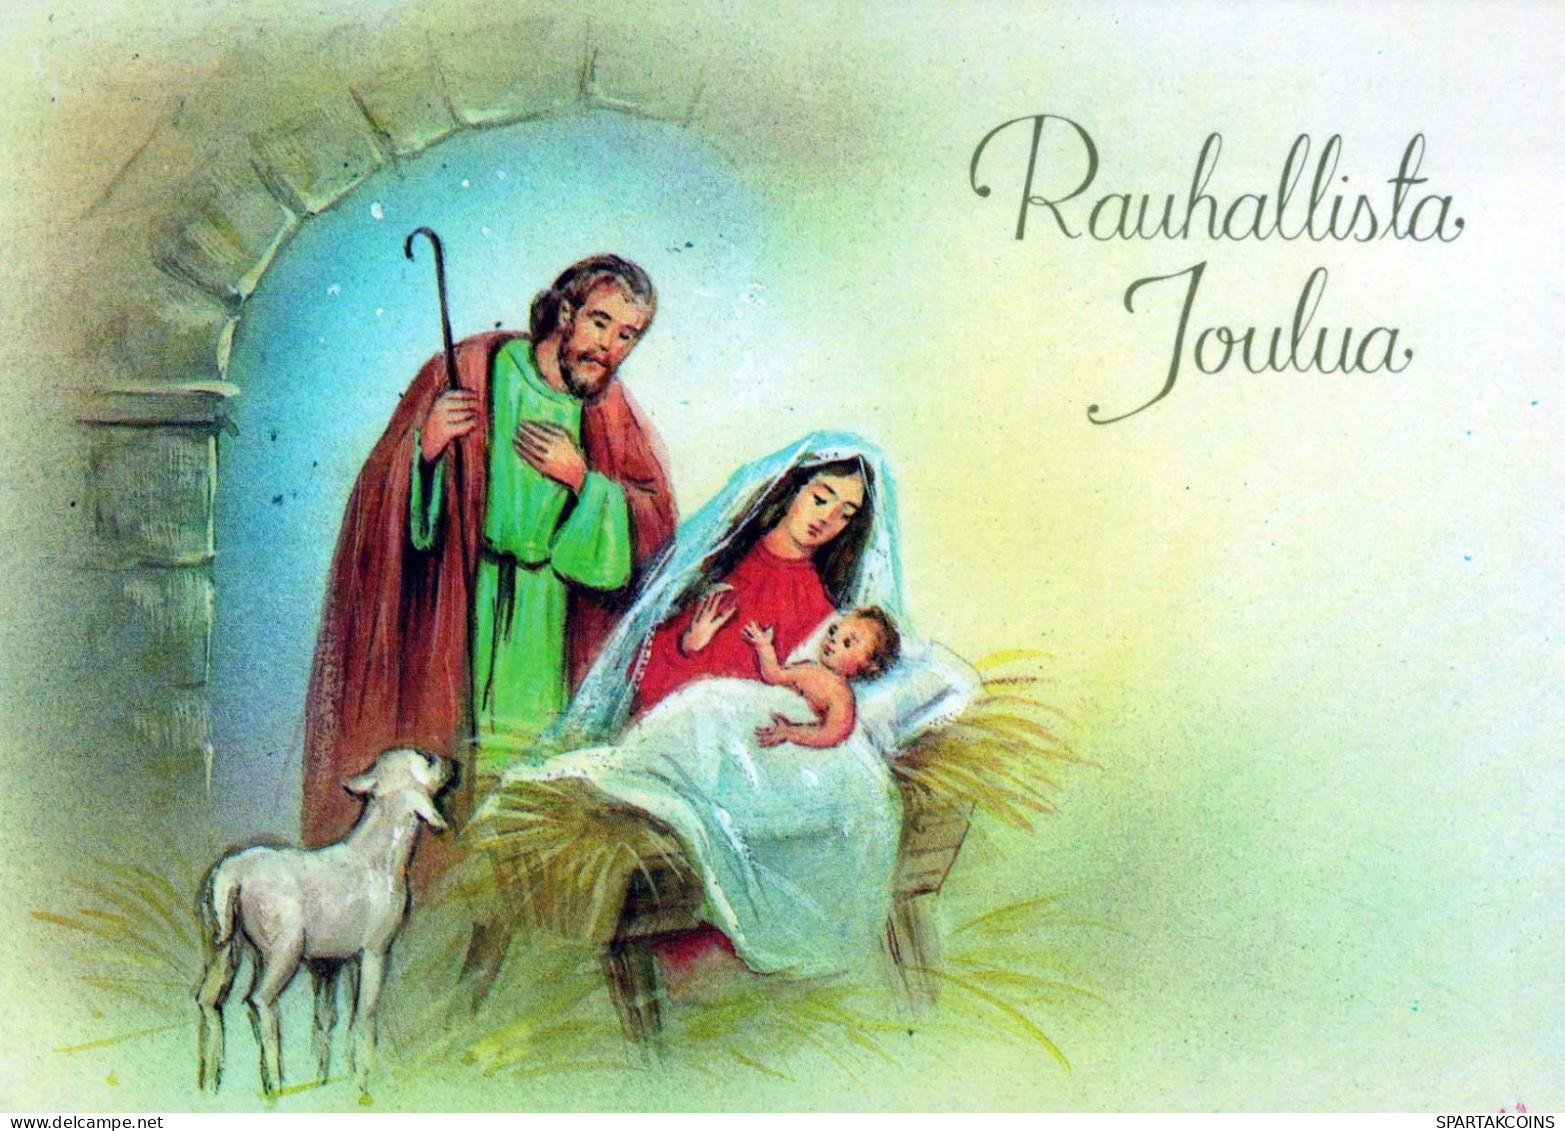 Jungfrau Maria Madonna Jesuskind Weihnachten Religion #PBB664.DE - Vierge Marie & Madones